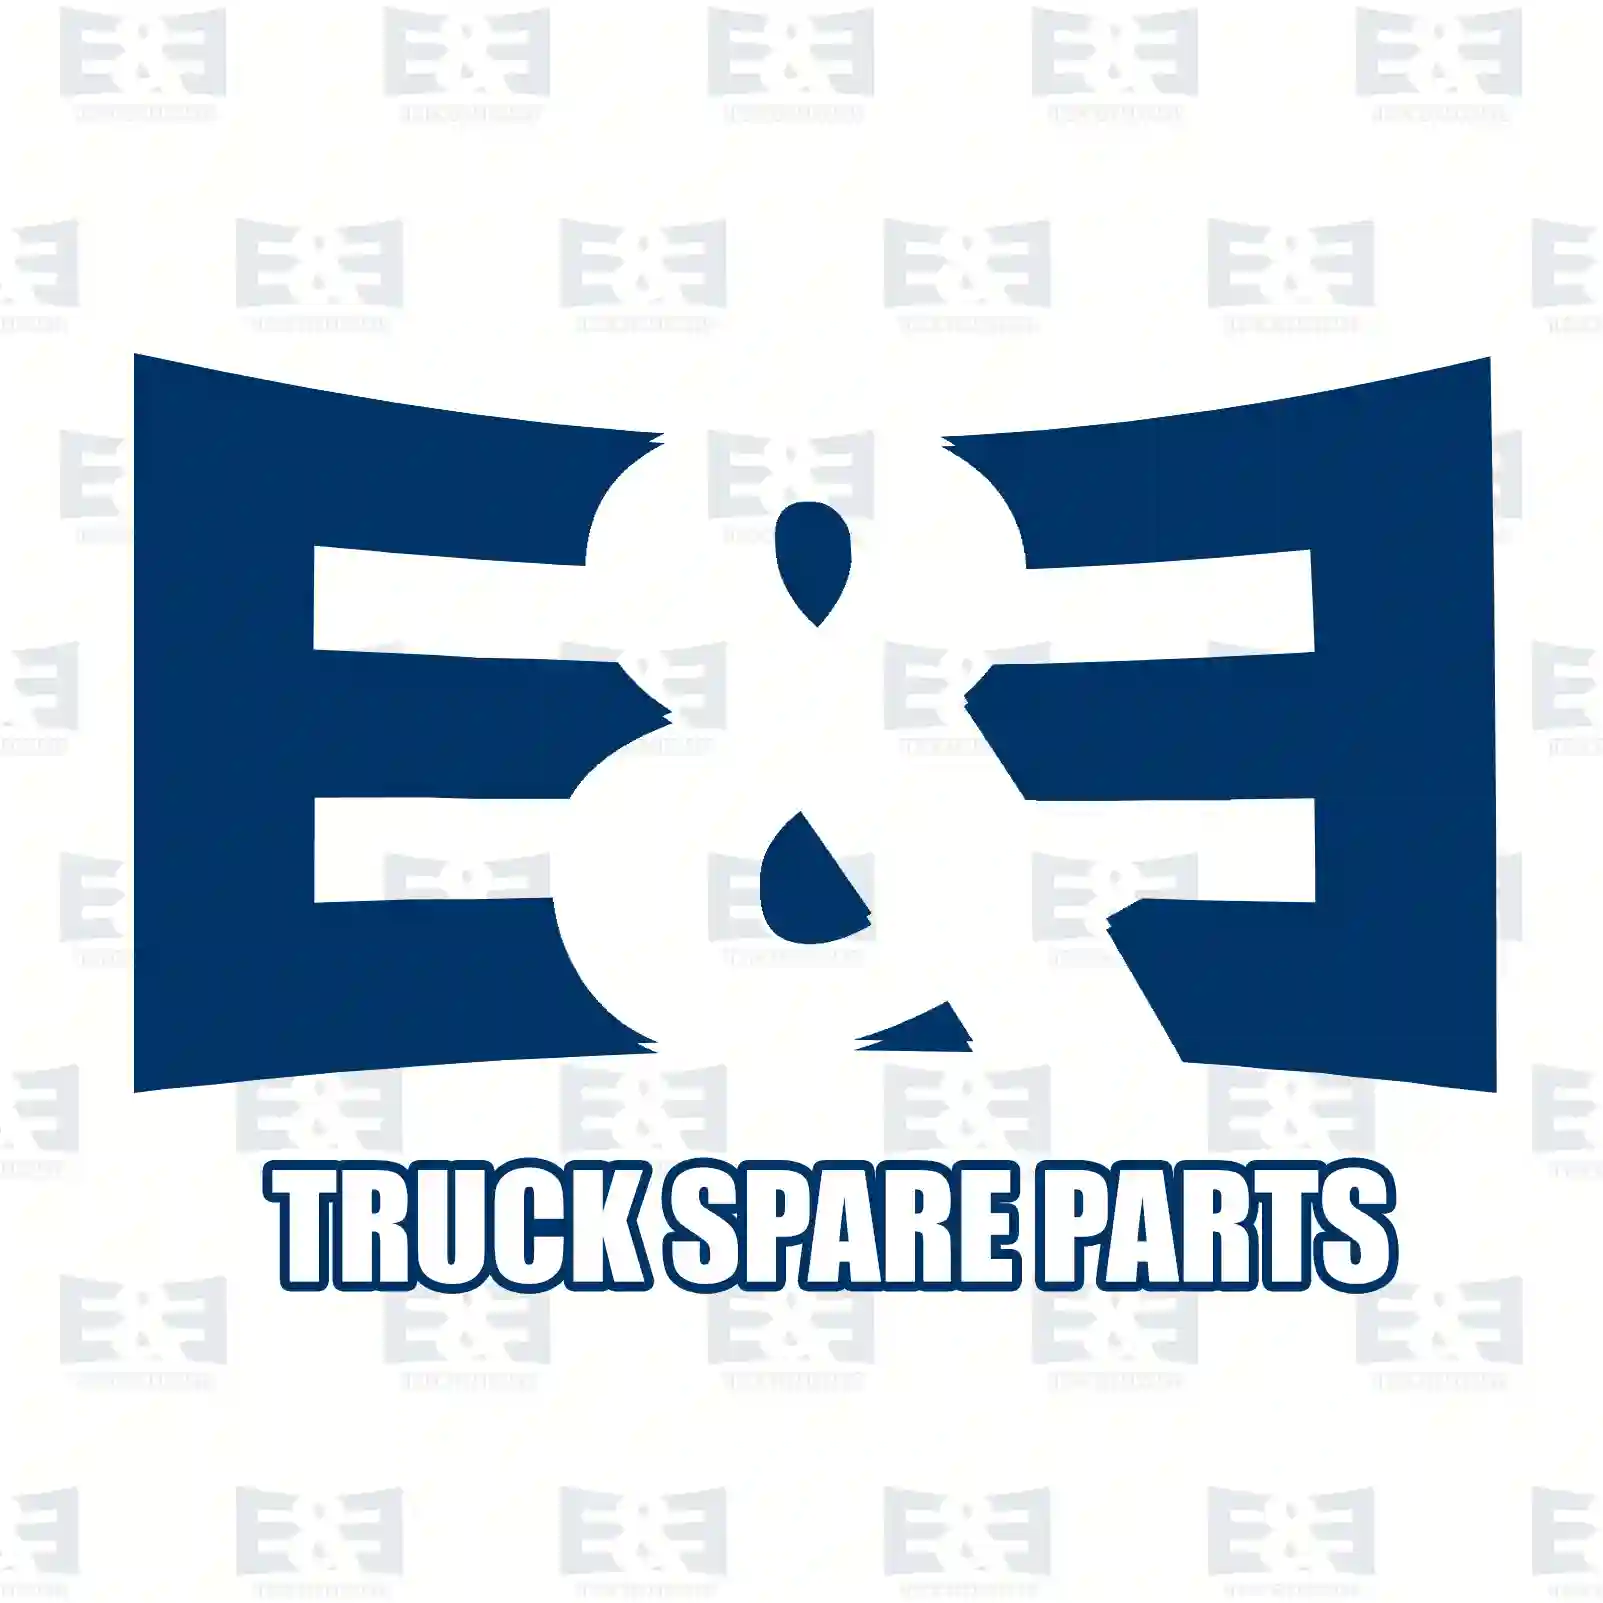 Disc brake pad kit, 2E2296201, 9110993, 9112585, 93173180, 95599218, NAY52643Z, 41060-00QAD, 77012-07339, 1605210, 1605980, 4402993, 4404485, 4404585, 0009110993, 7701206727, 7701207339, 8671016186 ||  2E2296201 E&E Truck Spare Parts | Truck Spare Parts, Auotomotive Spare Parts Disc brake pad kit, 2E2296201, 9110993, 9112585, 93173180, 95599218, NAY52643Z, 41060-00QAD, 77012-07339, 1605210, 1605980, 4402993, 4404485, 4404585, 0009110993, 7701206727, 7701207339, 8671016186 ||  2E2296201 E&E Truck Spare Parts | Truck Spare Parts, Auotomotive Spare Parts